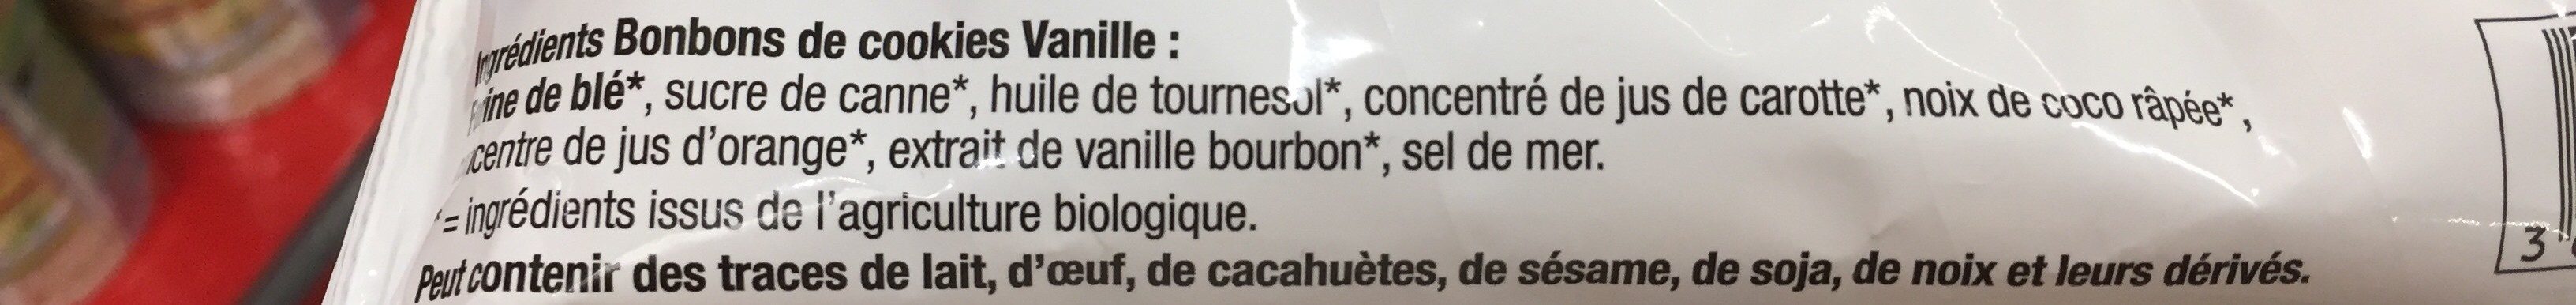 Bonbon de Cookie Vanille - Ingredients - fr